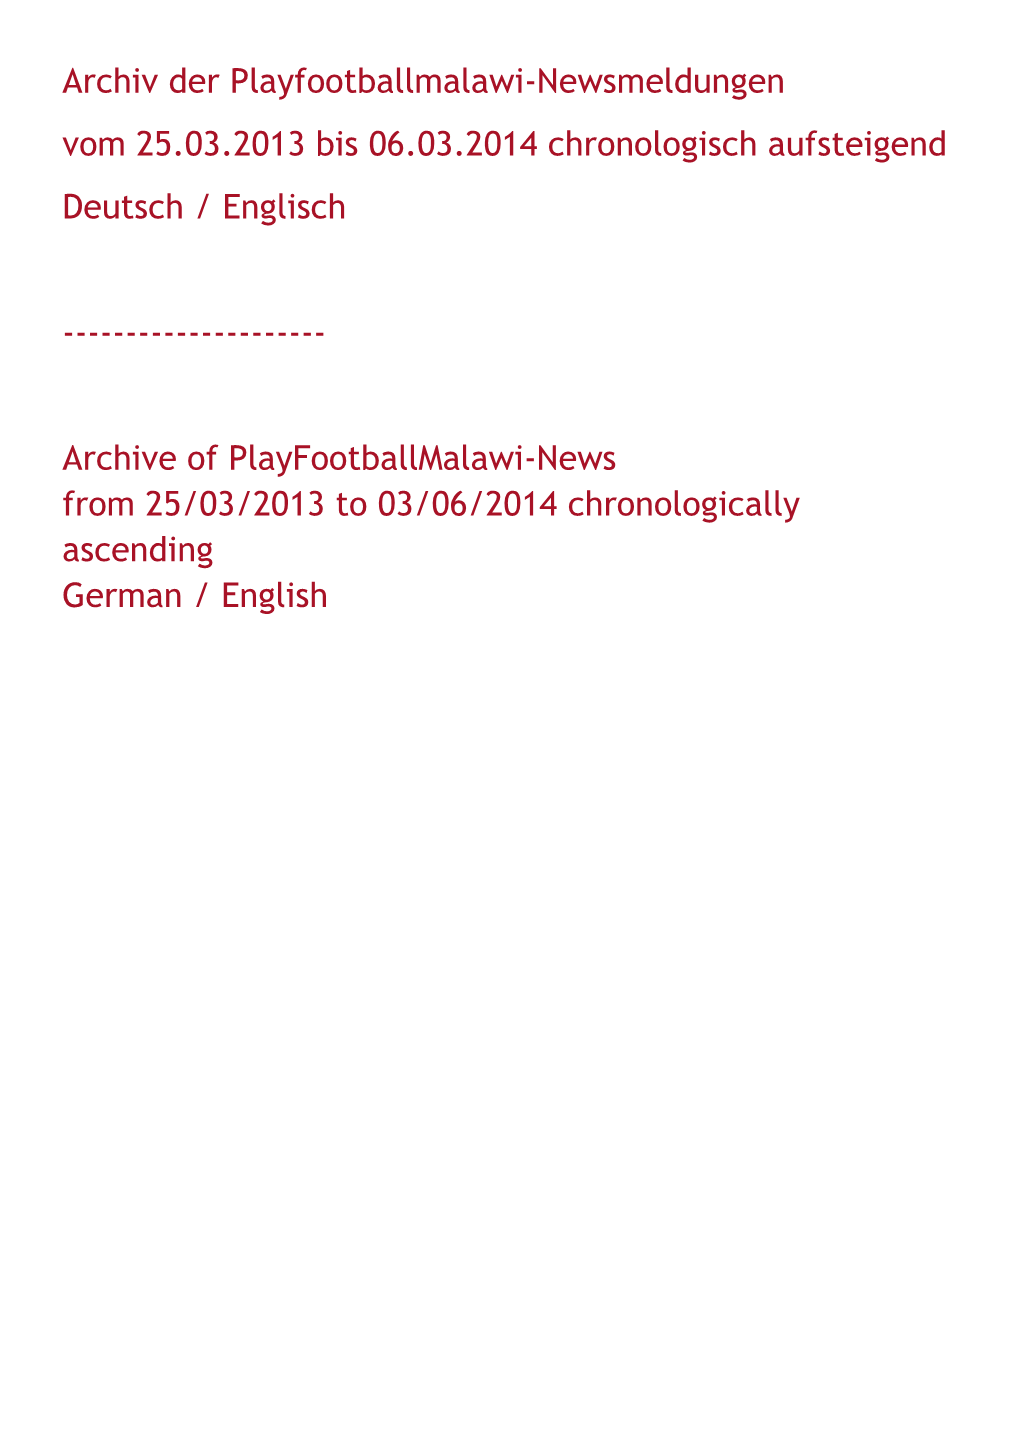 Archiv Der Playfootballmalawi-Newsmeldungen Vom 25.03.2013 Bis 06.03.2014 Chronologisch Aufsteigend Deutsch / Englisch